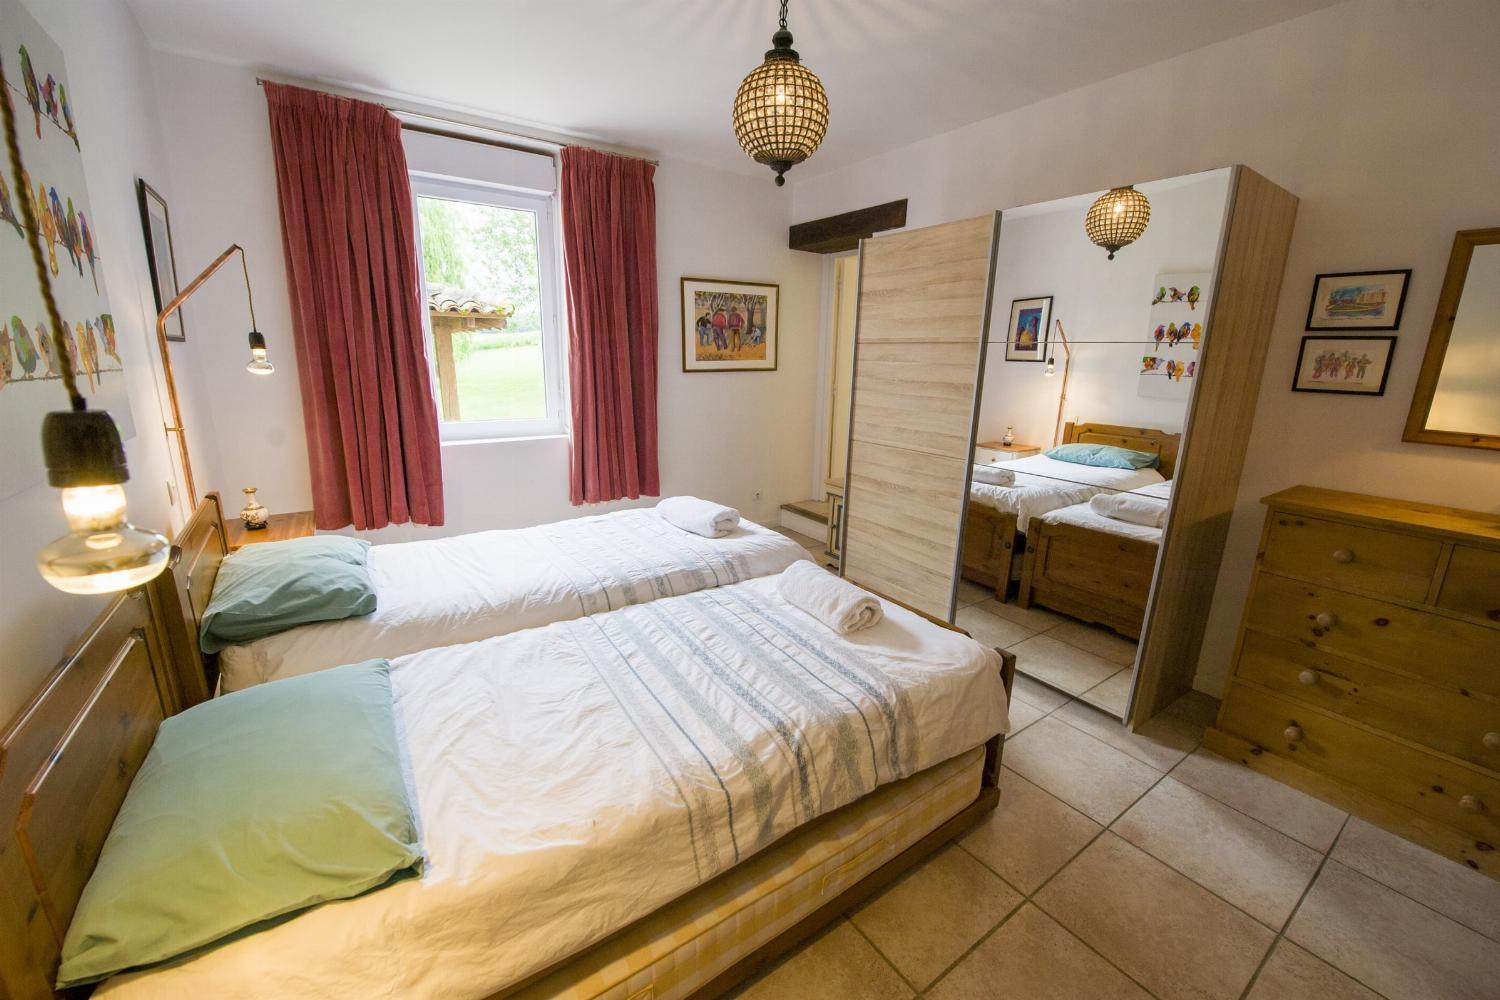 Bedroom | Rental home in Haute-Garonne